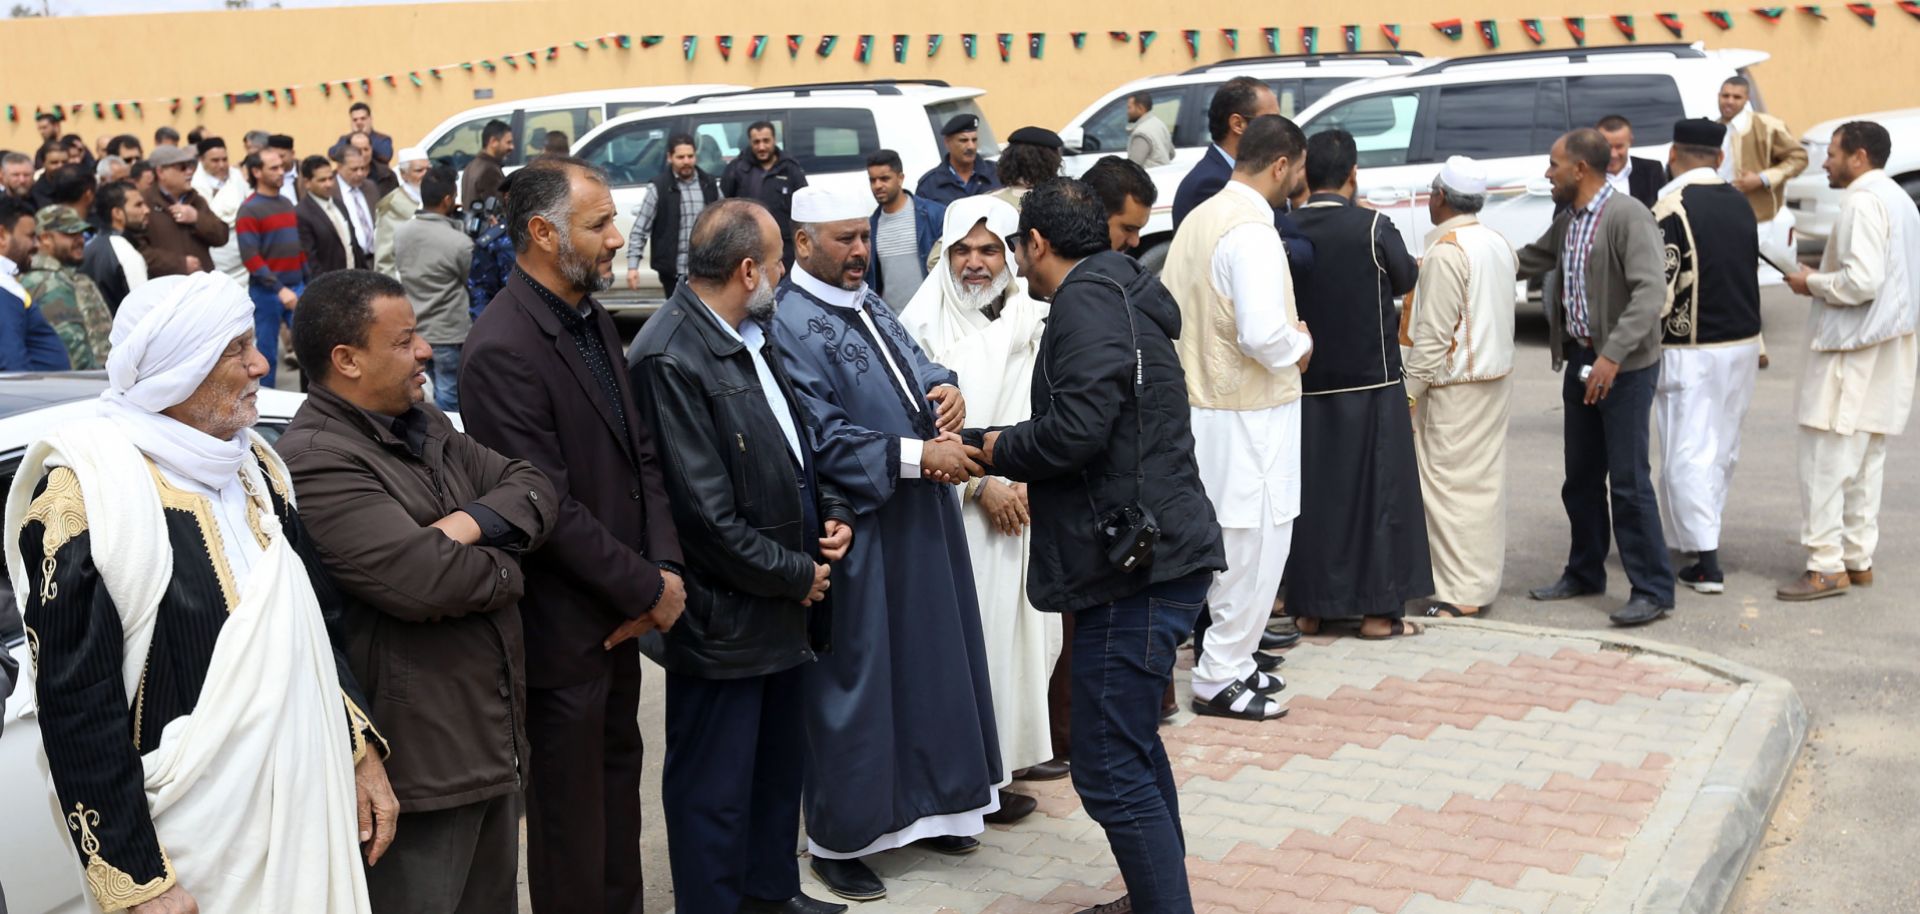 Libyan tribal leaders welcome visitors.